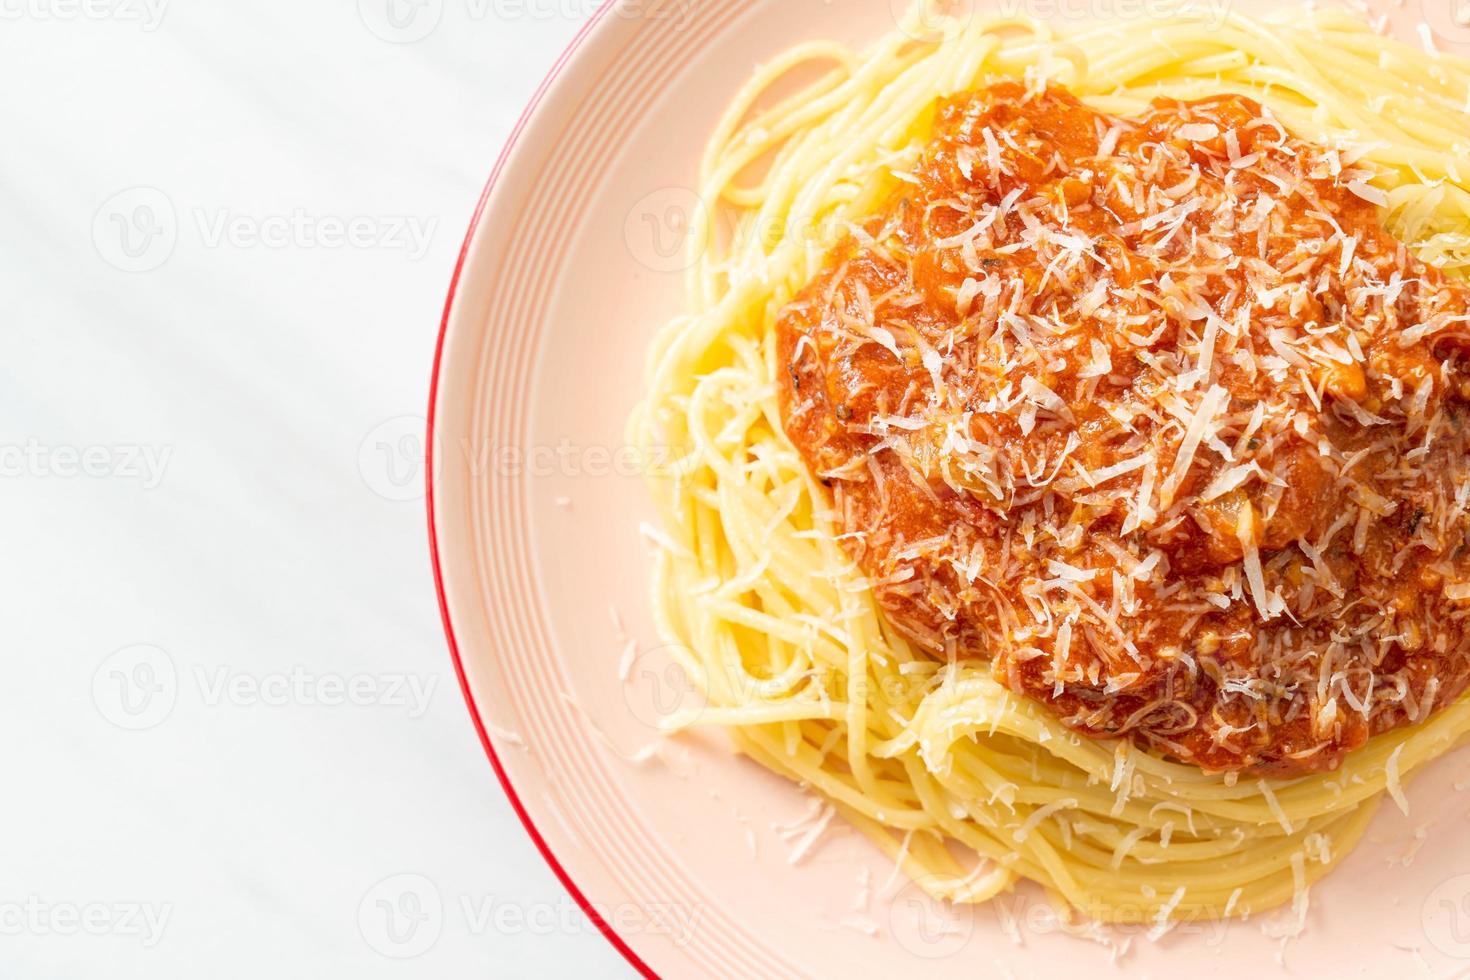 espaguete de porco à bolonhesa com queijo parmesão - comida italiana foto